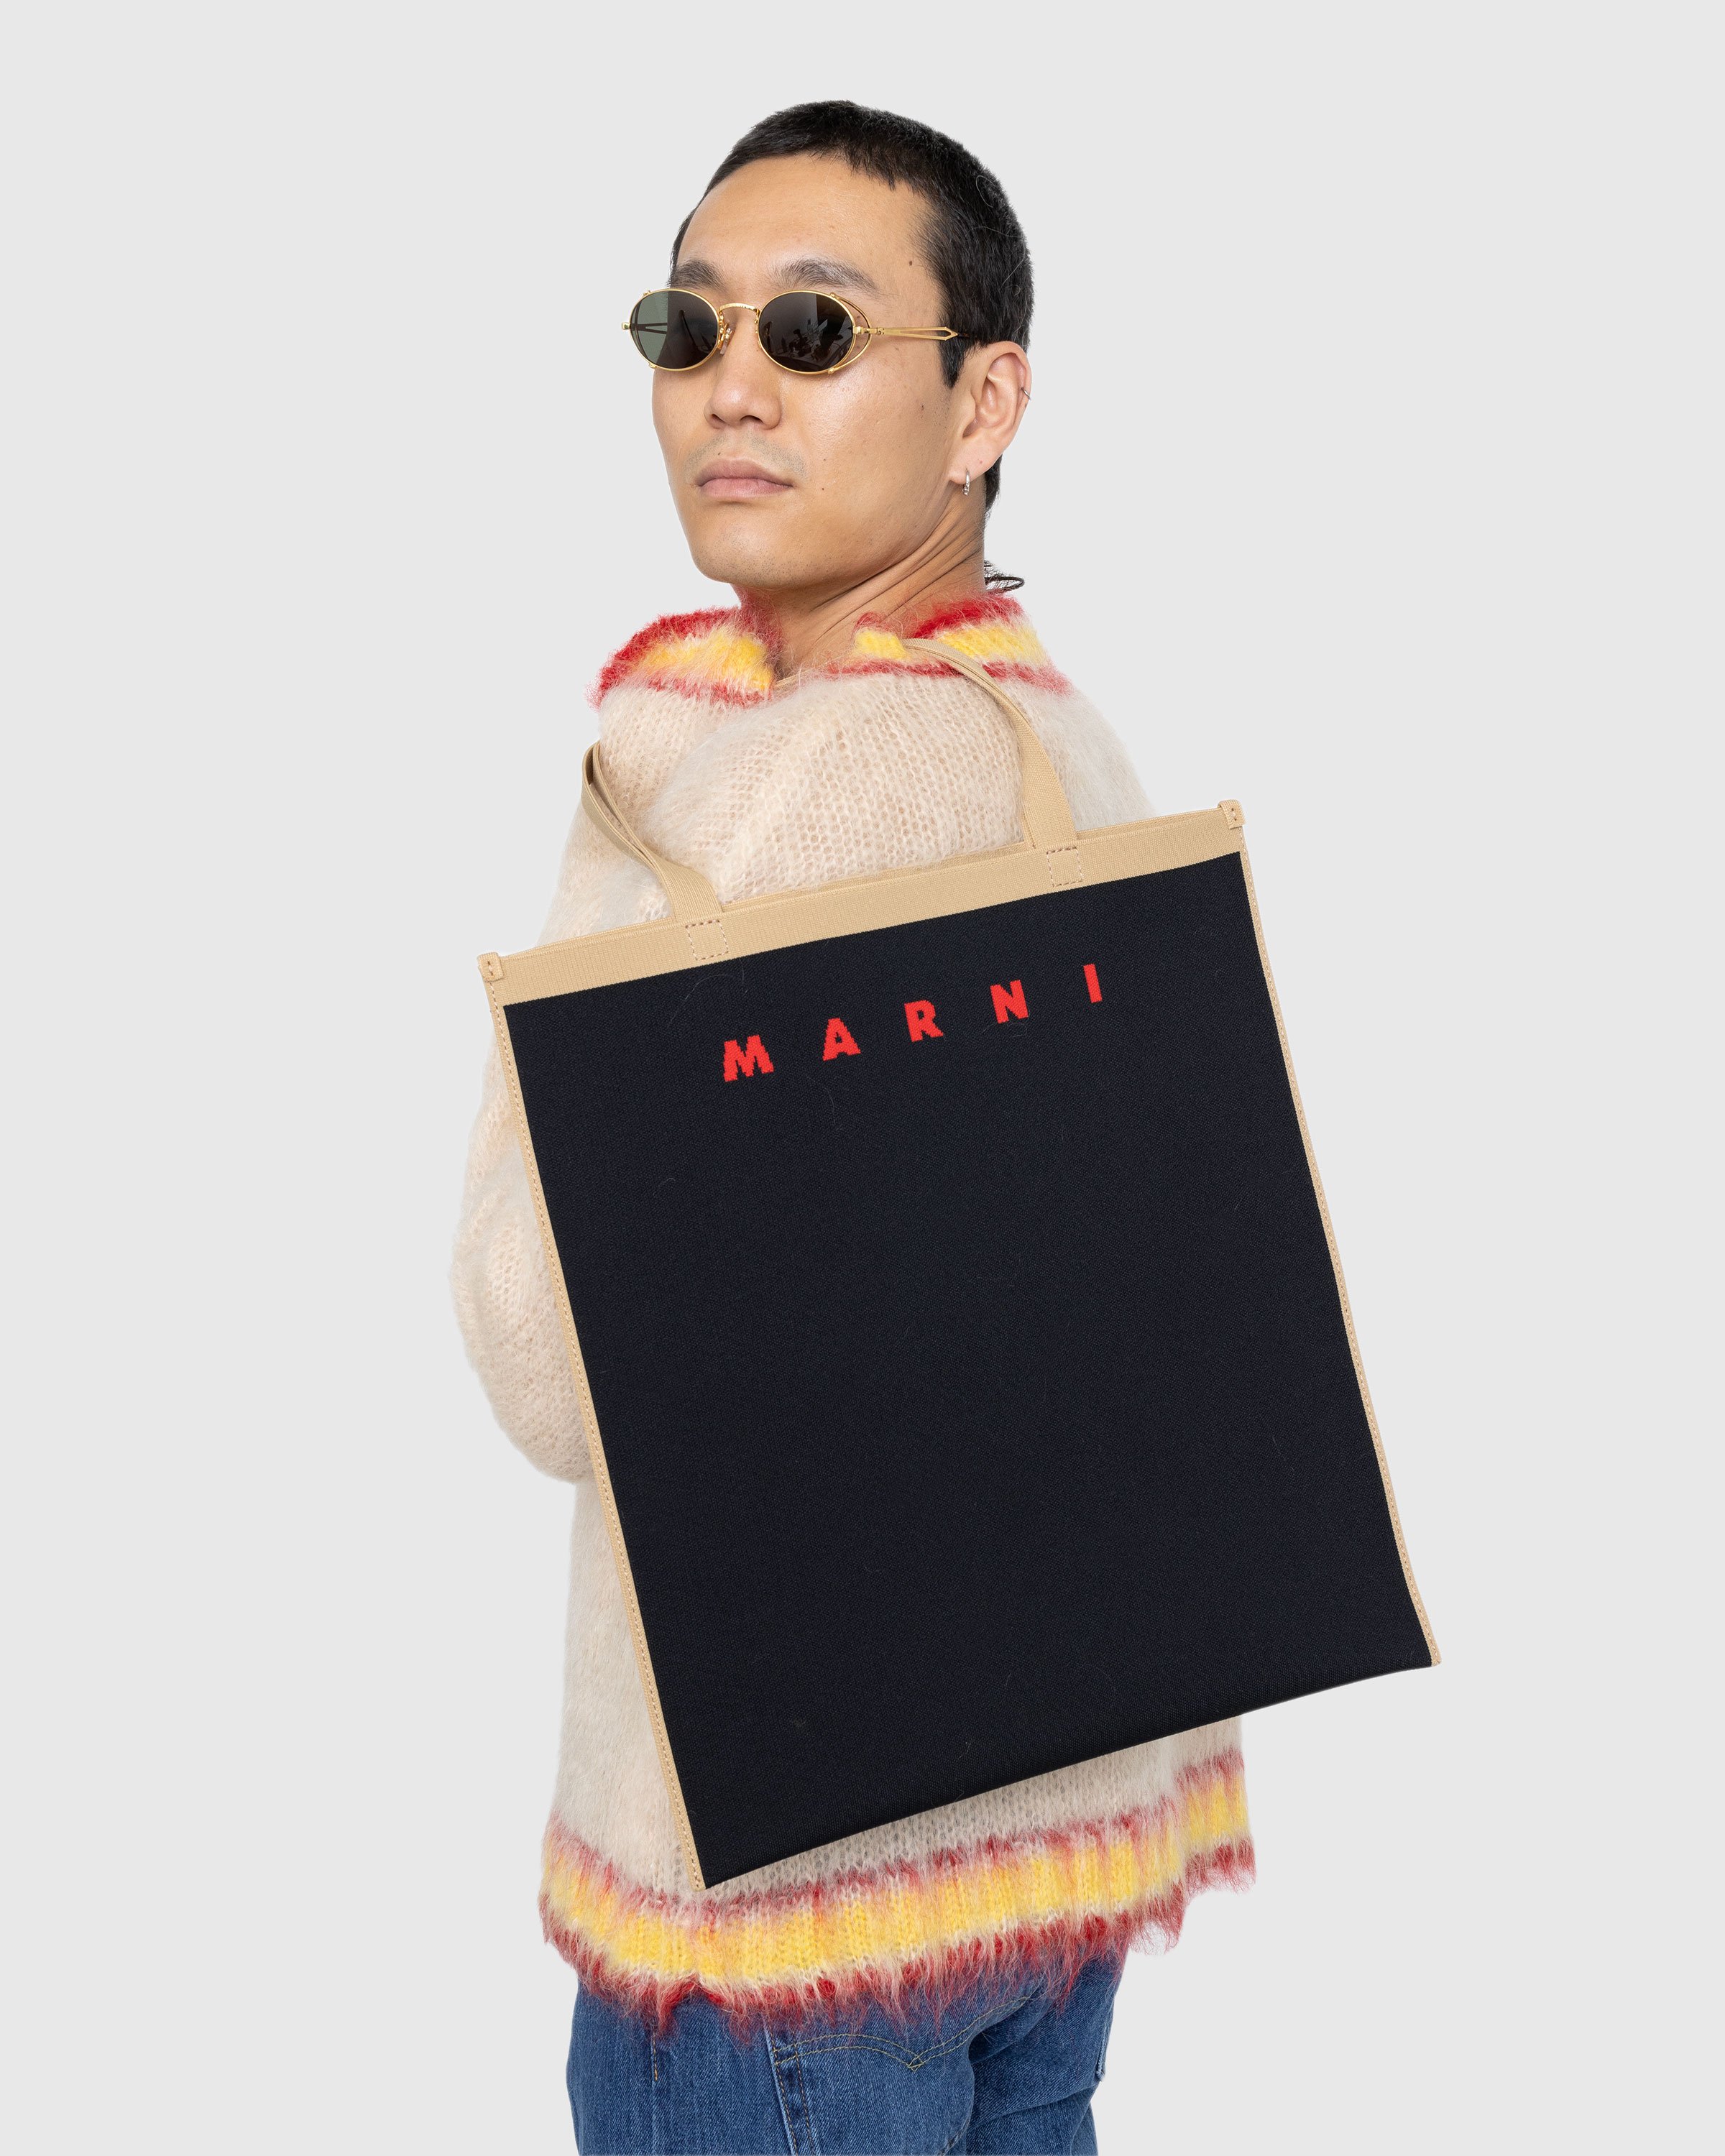 Marni - Shopping Tote Black - Accessories - Black - Image 4